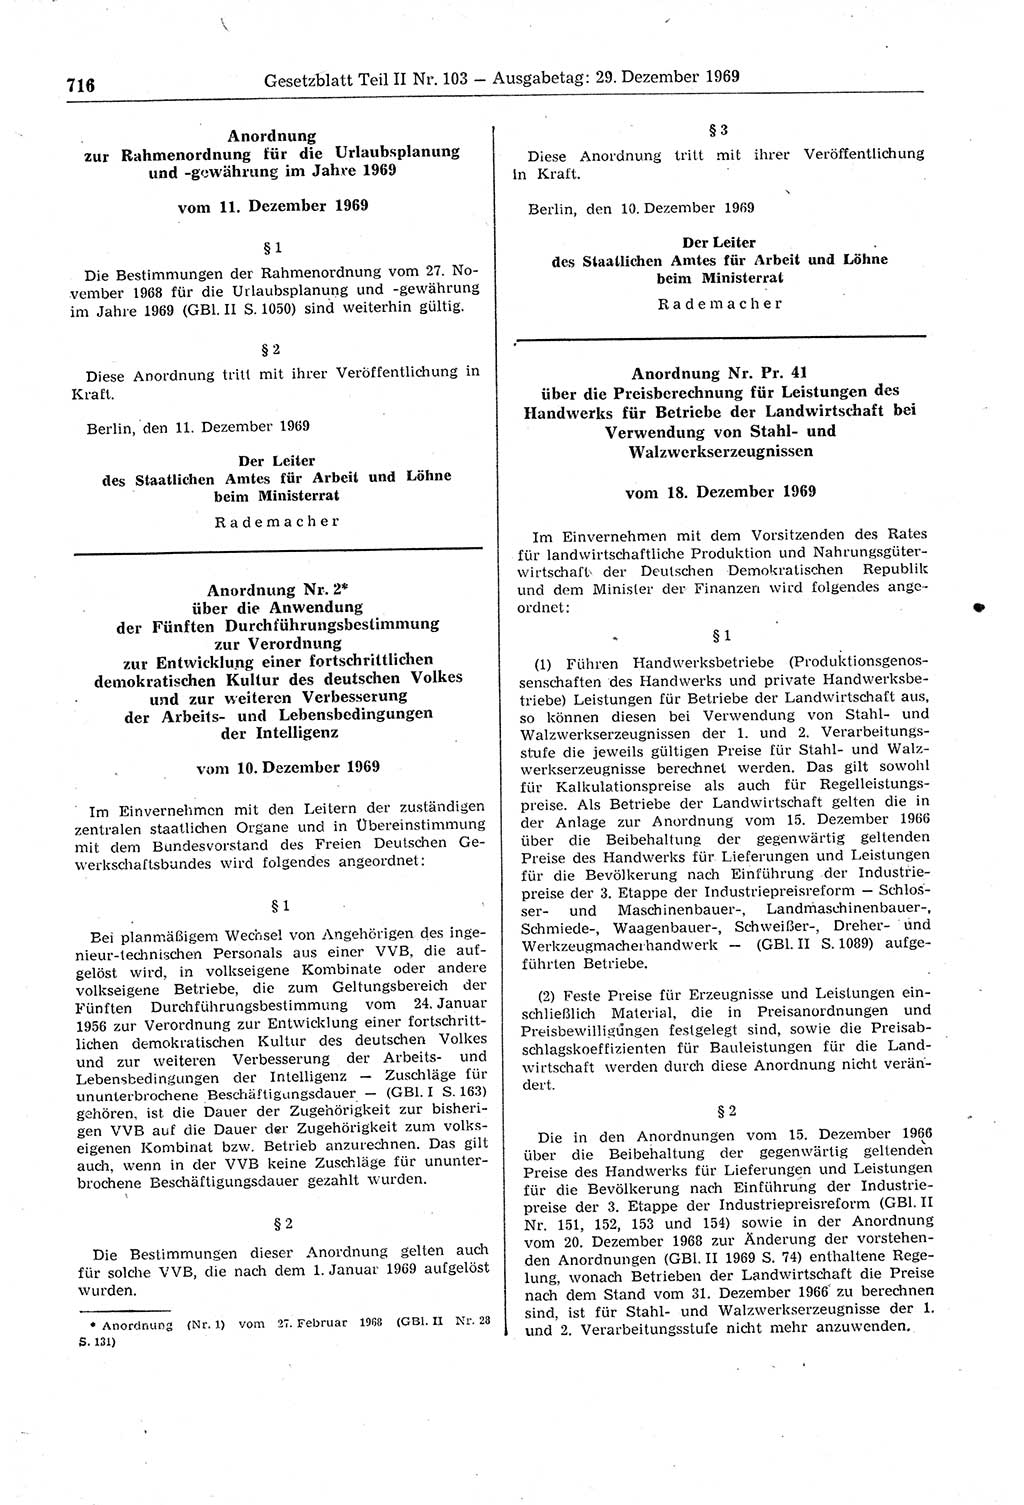 Gesetzblatt (GBl.) der Deutschen Demokratischen Republik (DDR) Teil ⅠⅠ 1969, Seite 716 (GBl. DDR ⅠⅠ 1969, S. 716)